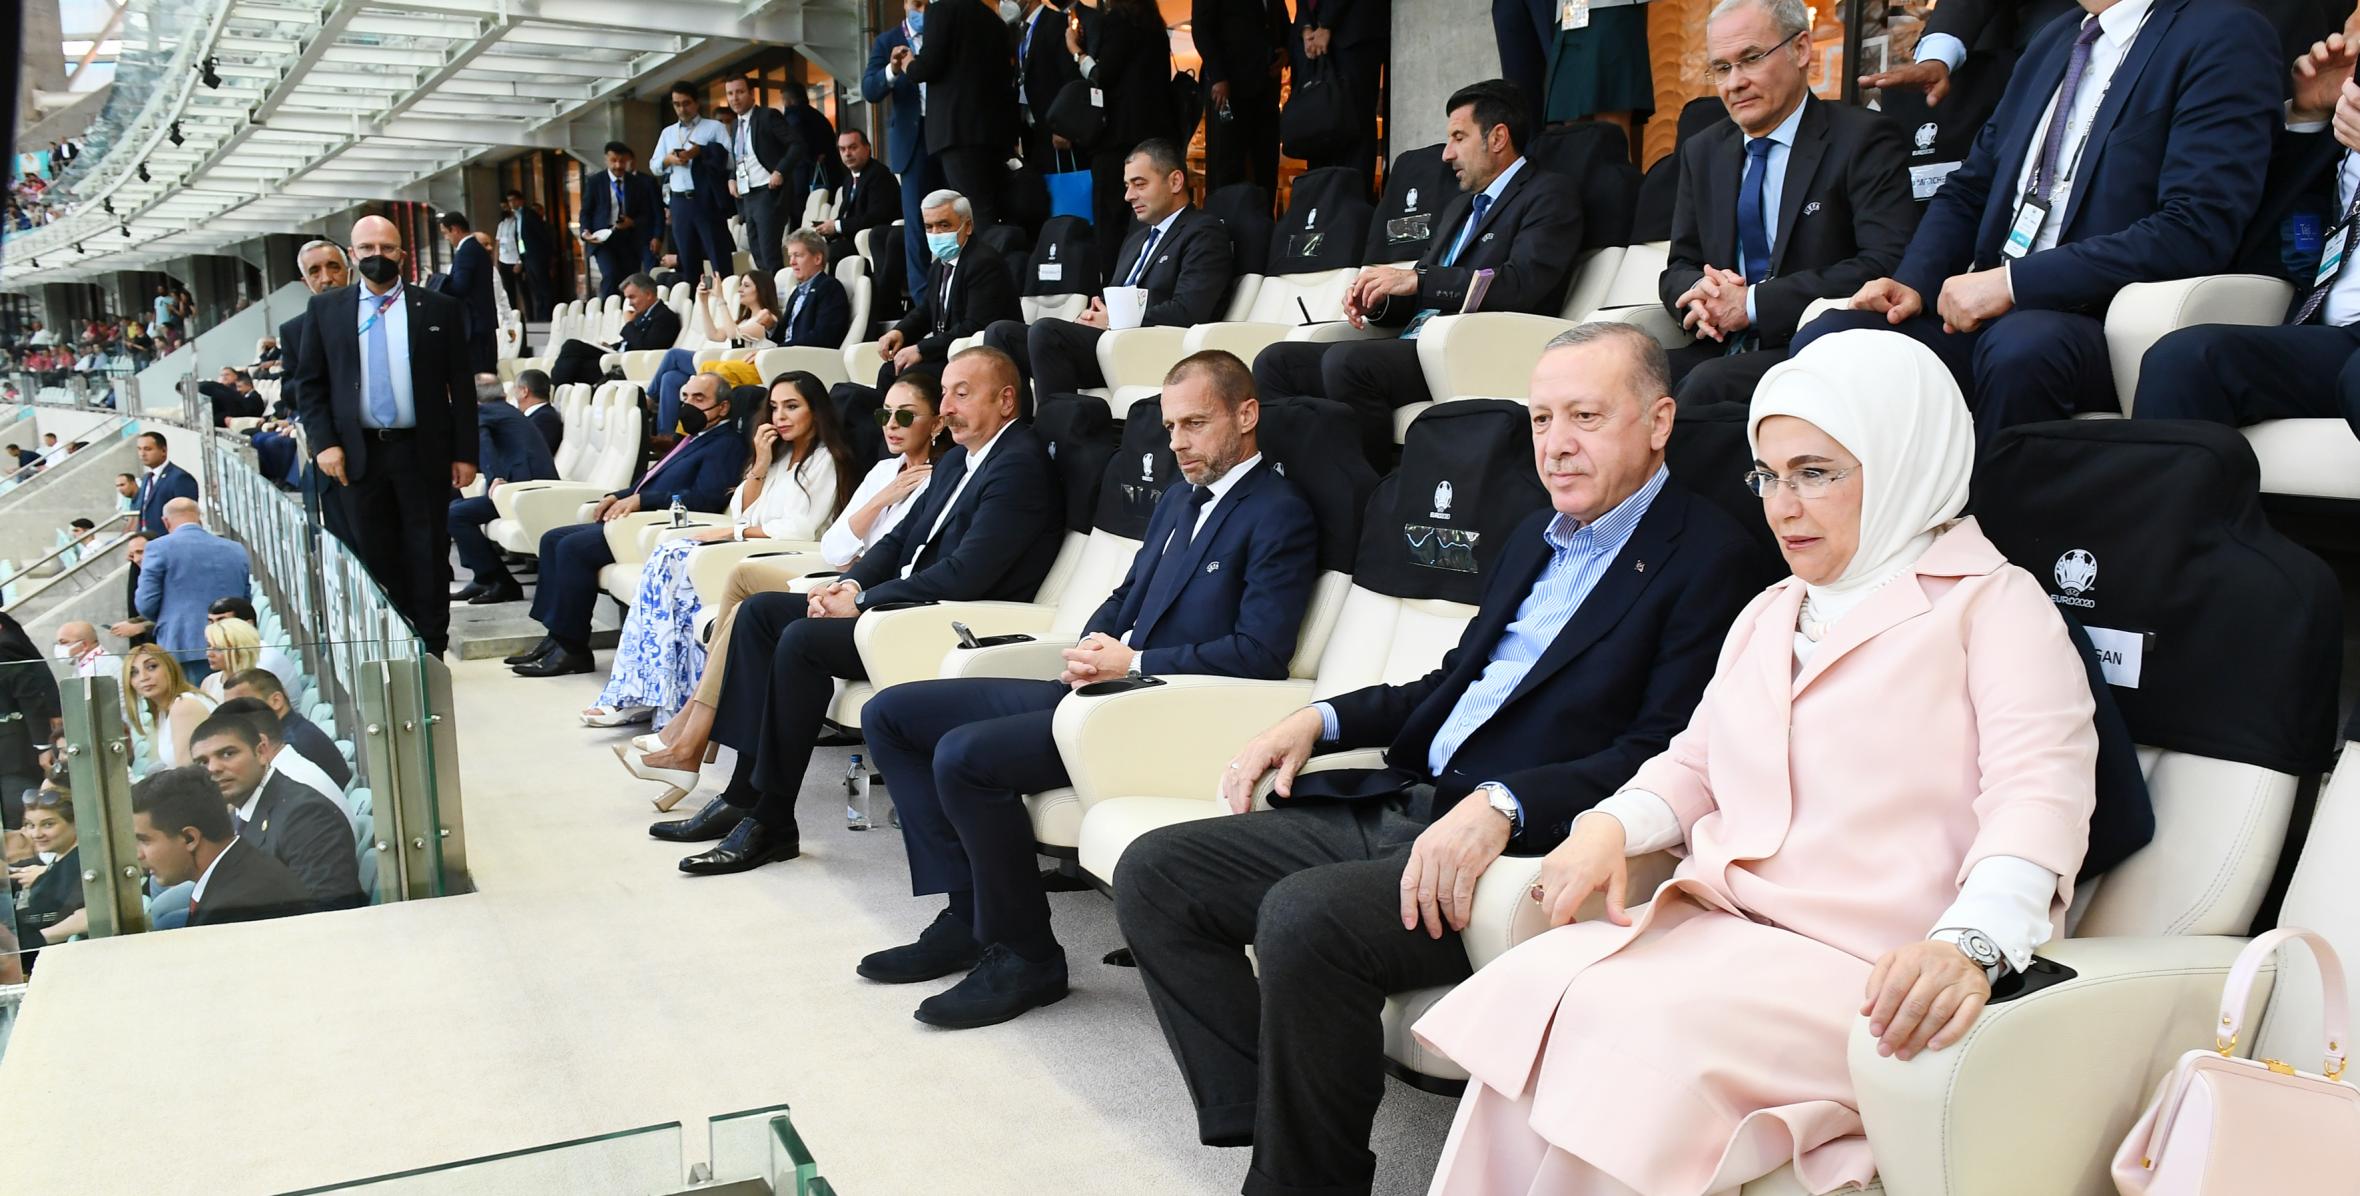 На Бакинском Олимпийском стадионе состоялся матч финального этапа чемпионата Европы между сборными Турции и Уэльса На матче присутствовали президенты Азербайджана и Турции